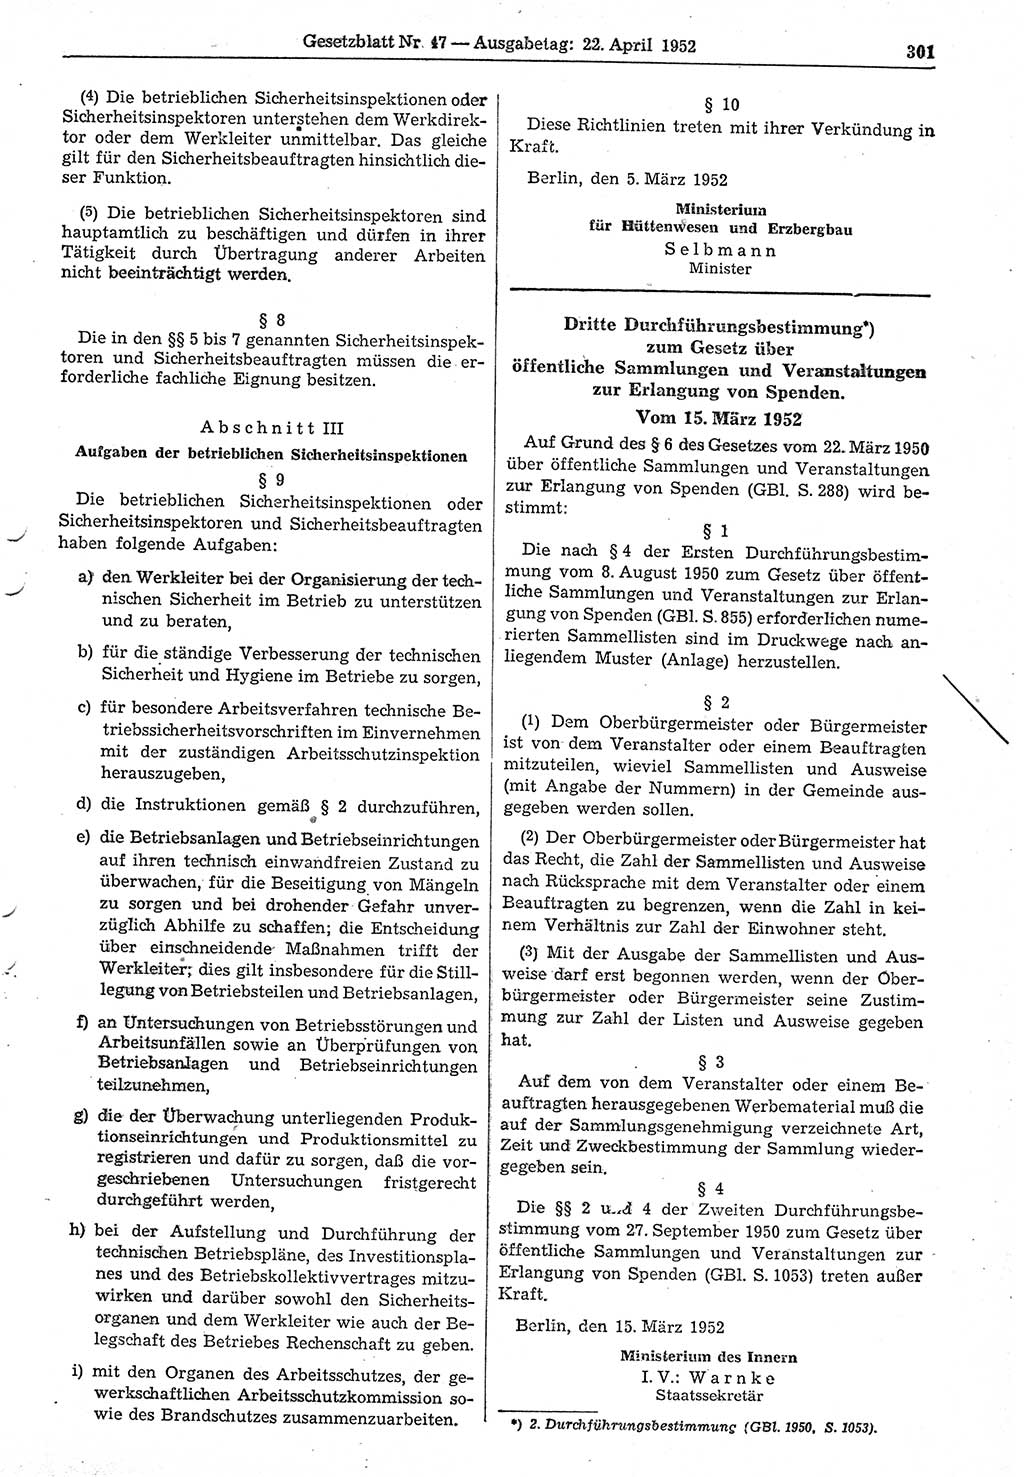 Gesetzblatt (GBl.) der Deutschen Demokratischen Republik (DDR) 1952, Seite 301 (GBl. DDR 1952, S. 301)